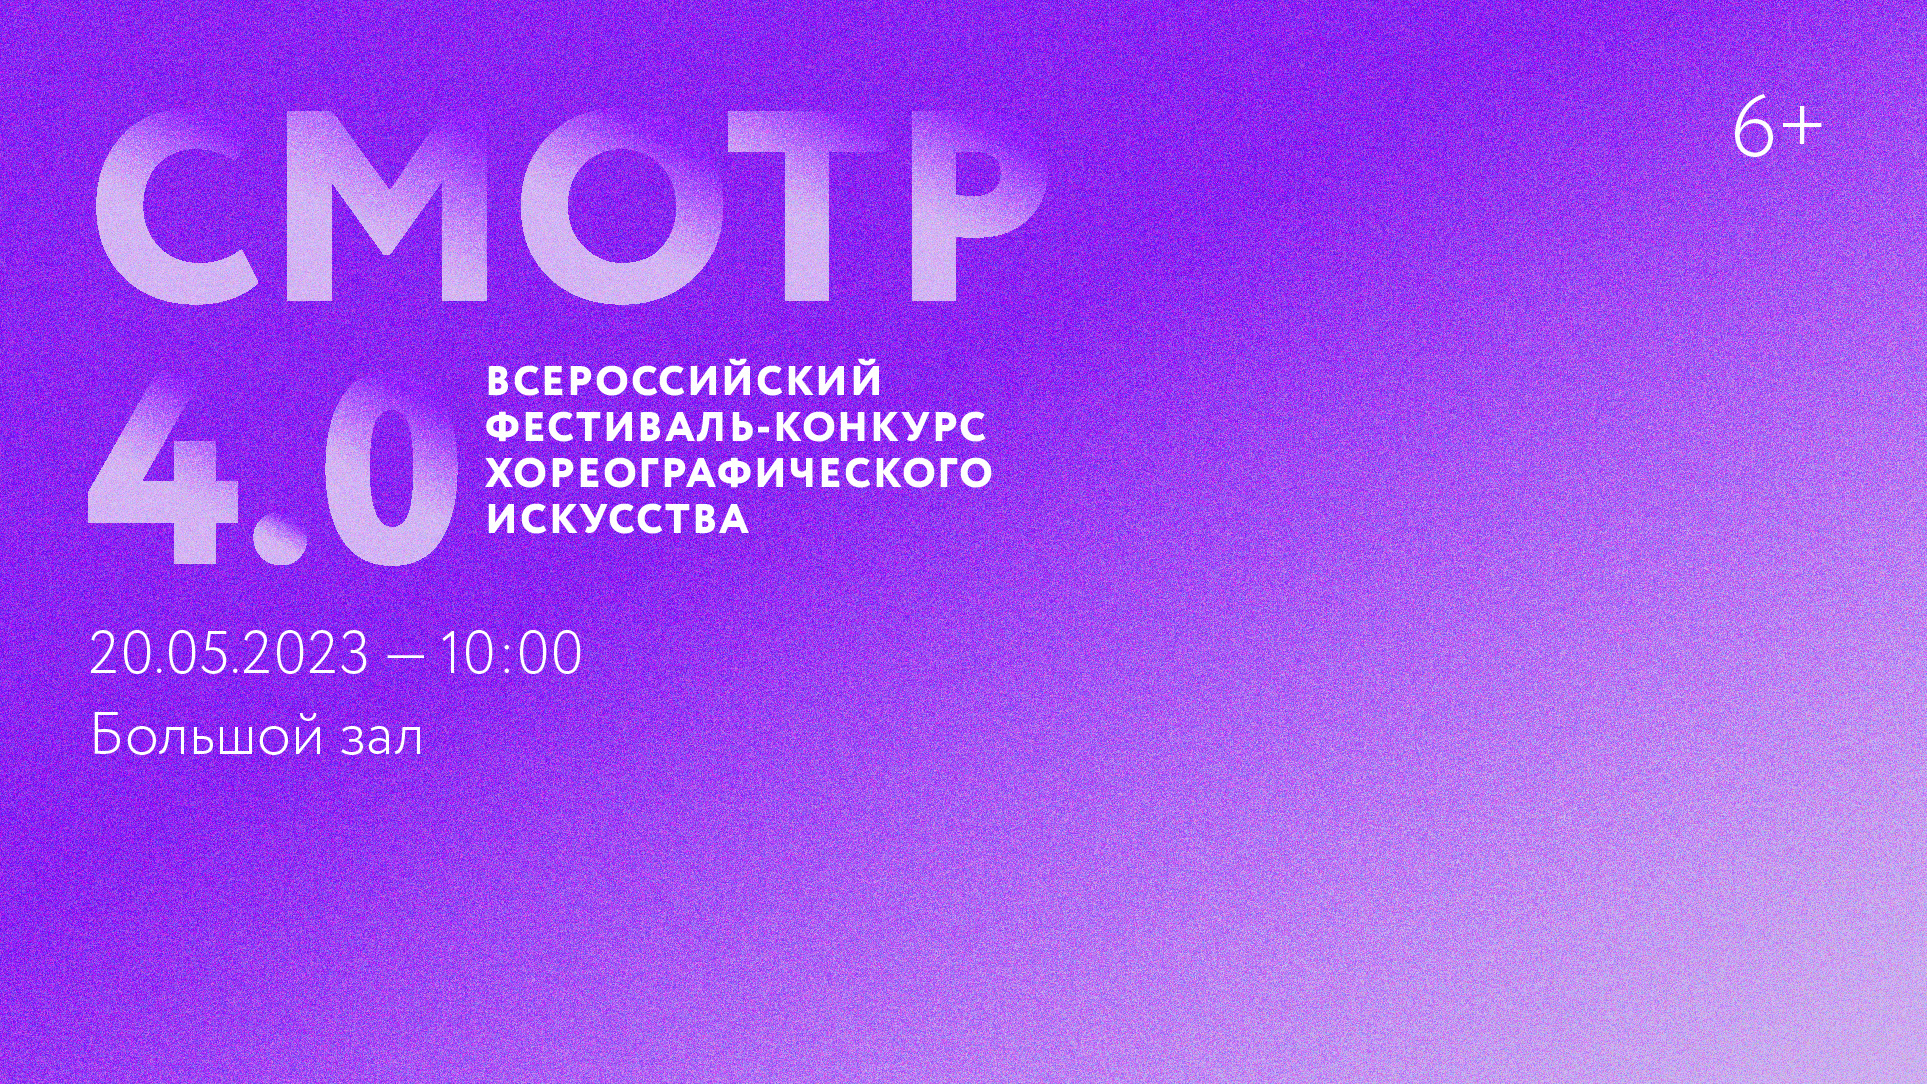 Всероссийский фестиваль-конкурс хореографического искусства «СМОТР 4.0»